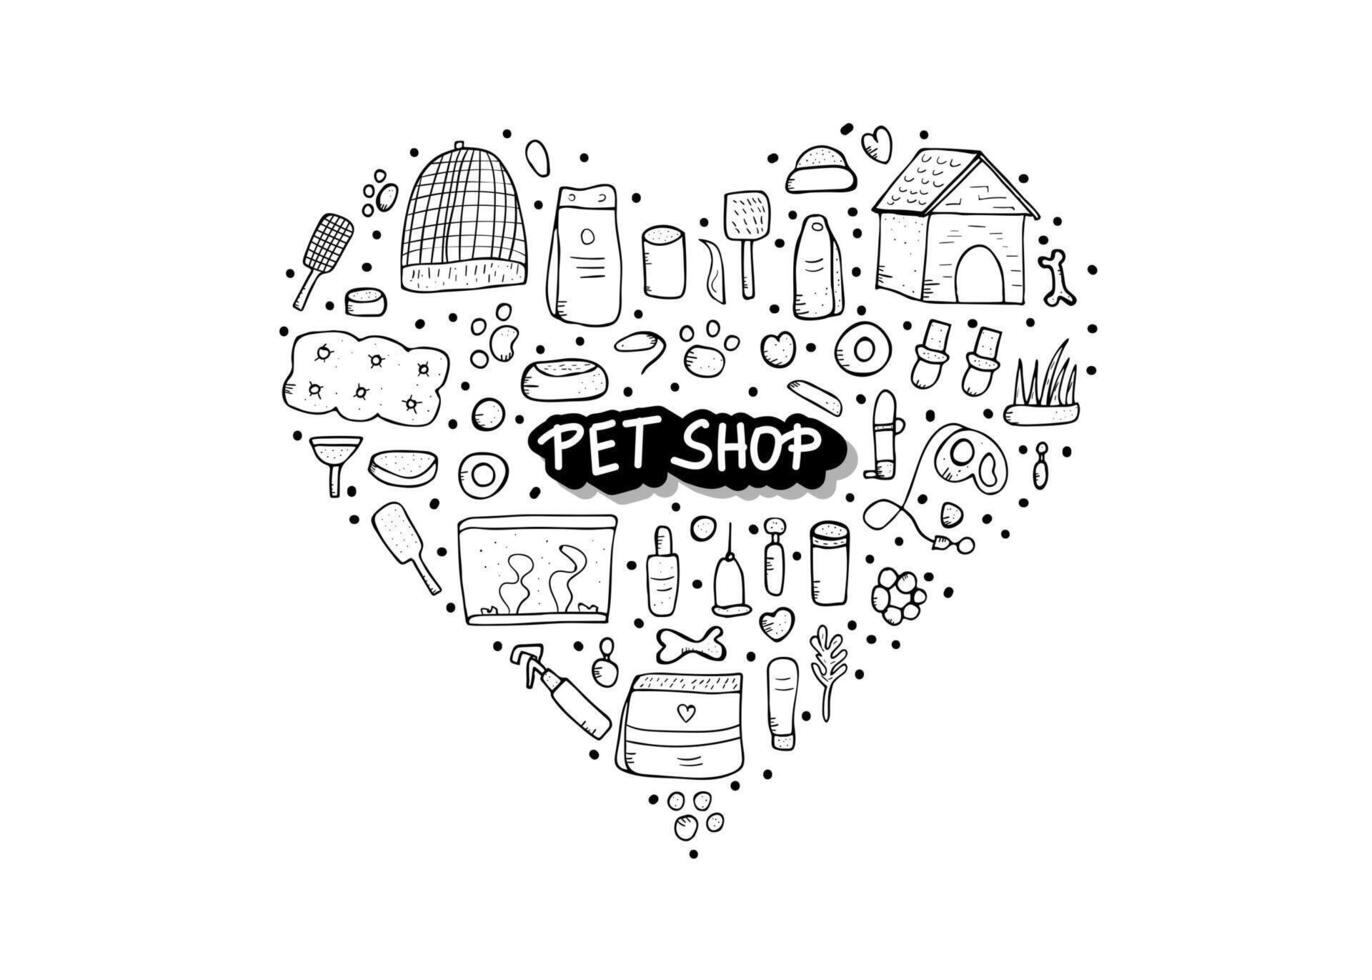 Pet shop concept. Vector doodle style design.